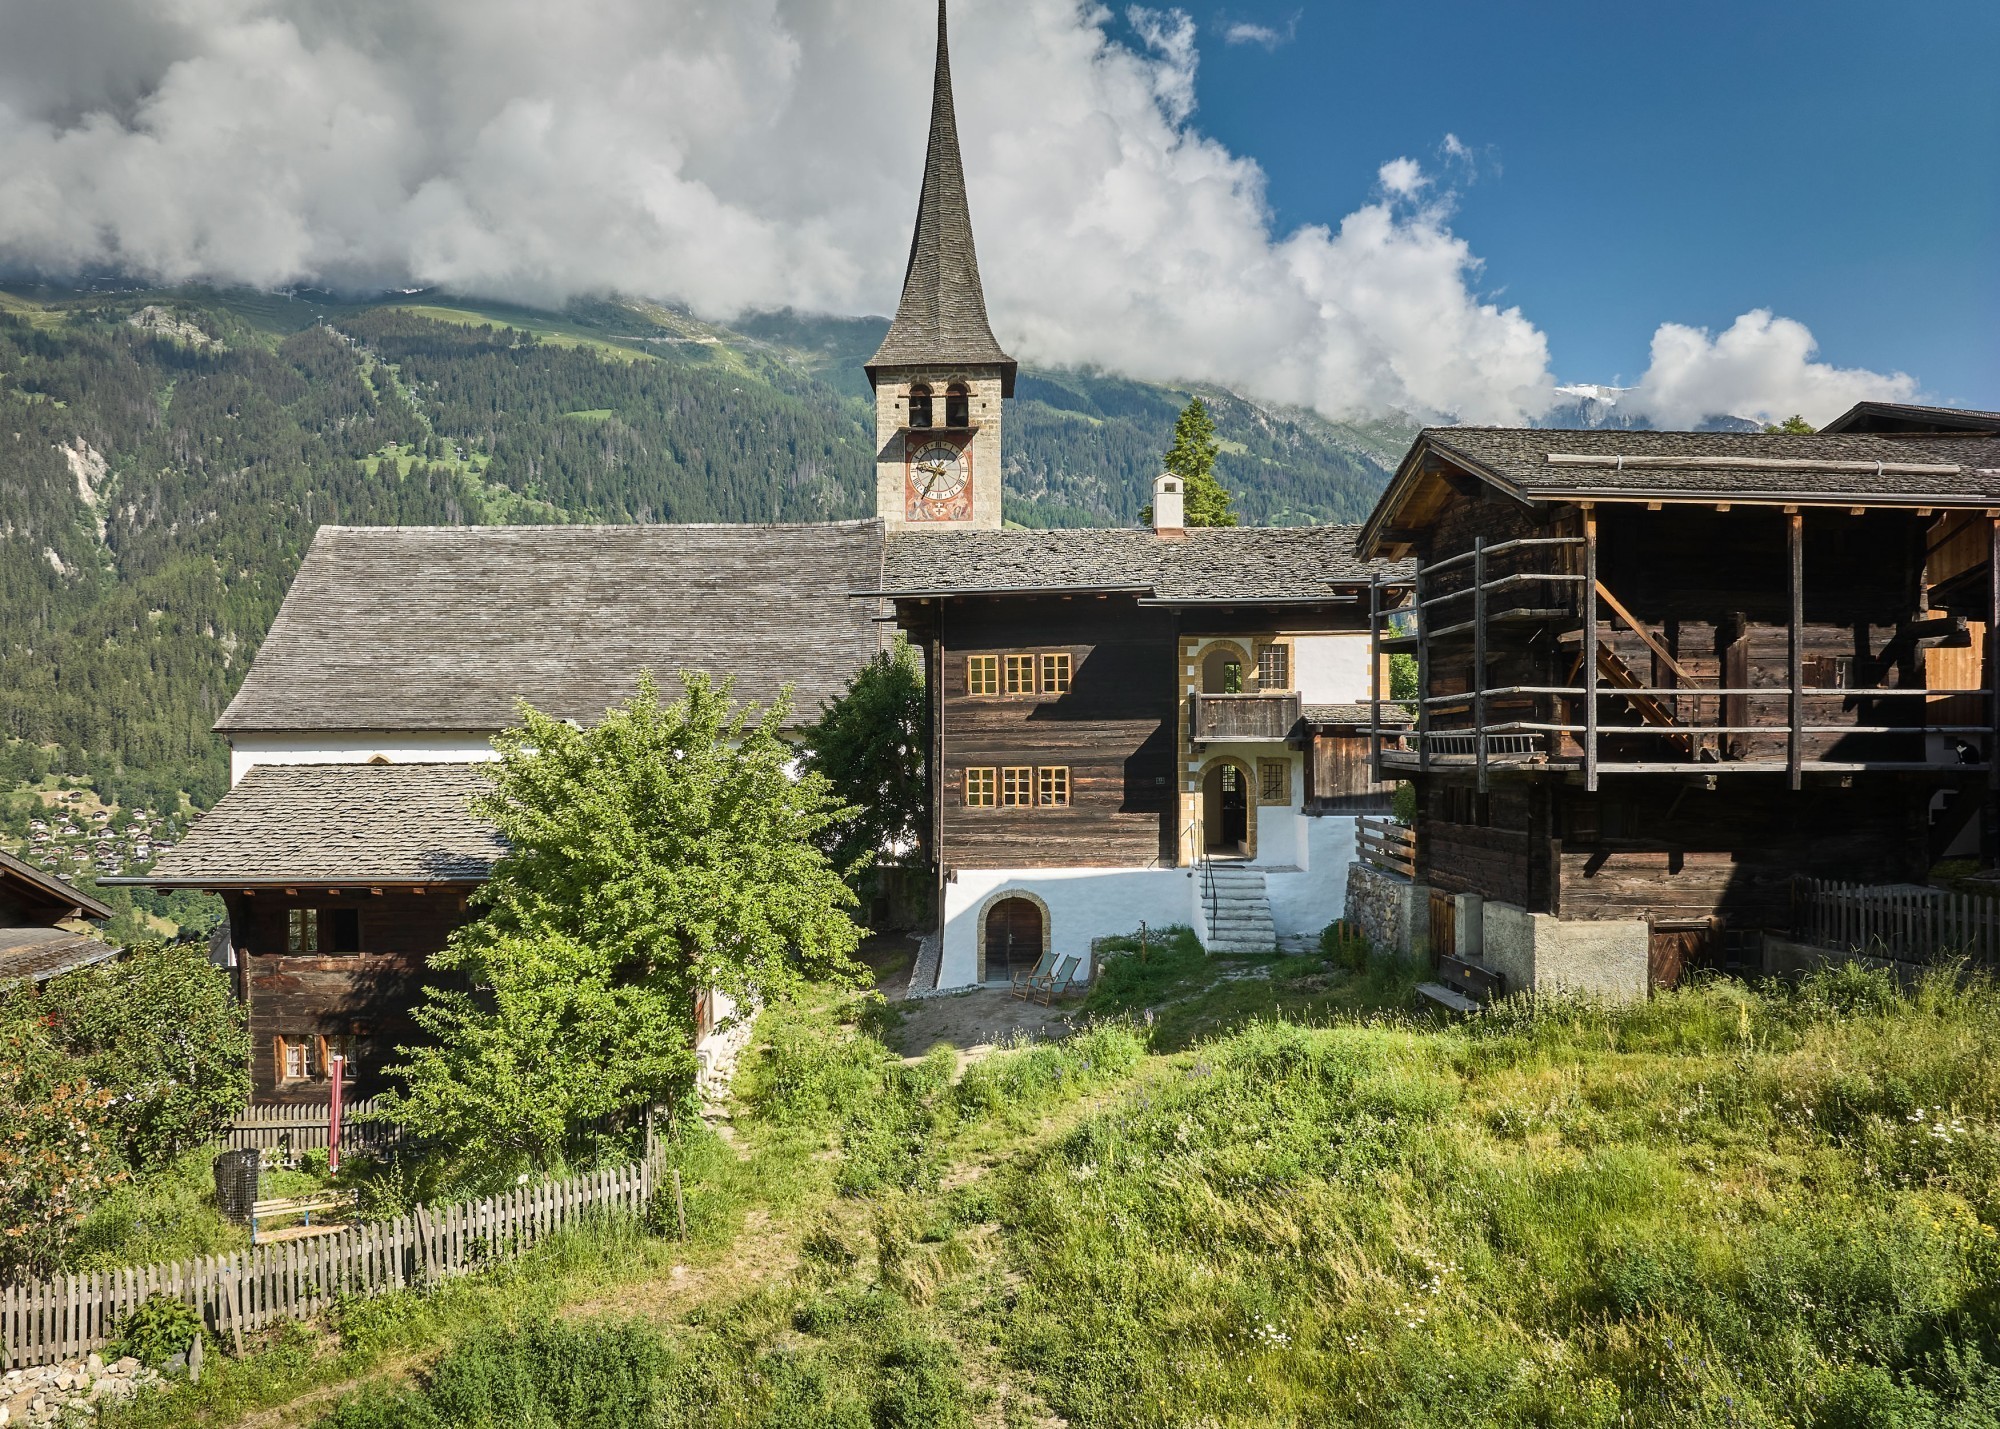 Nouveauté dans l'offre de la fondation Vacances au cœur du patrimoine: la chapelle fraîchement rénovée du village d'Ernen, dans la vallée de Conches (VS).